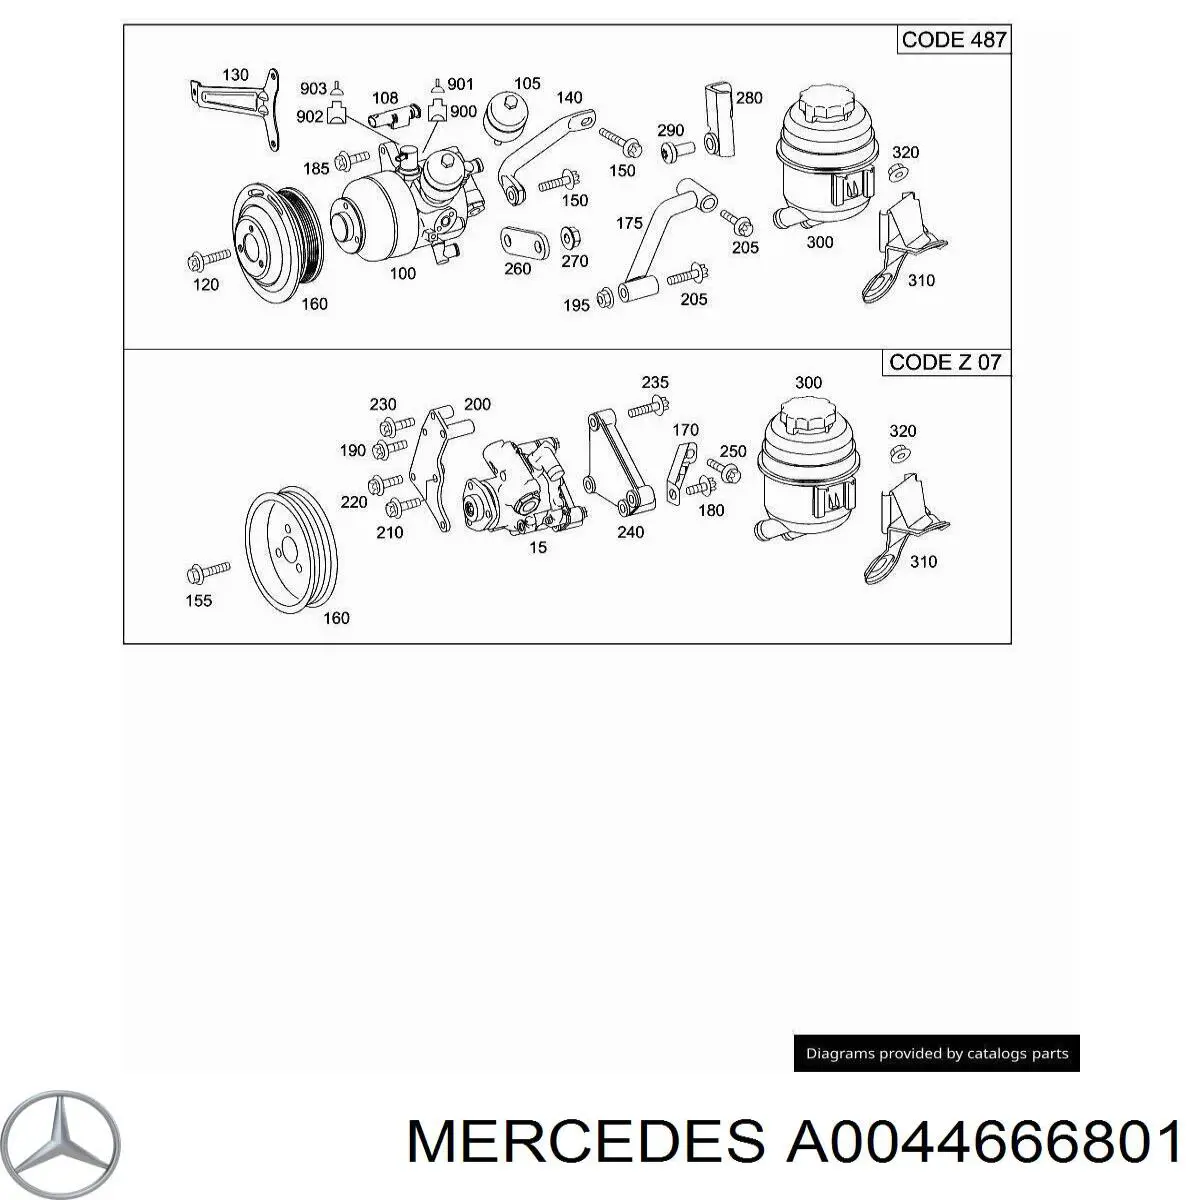 0044666801 Mercedes bomba de dirección